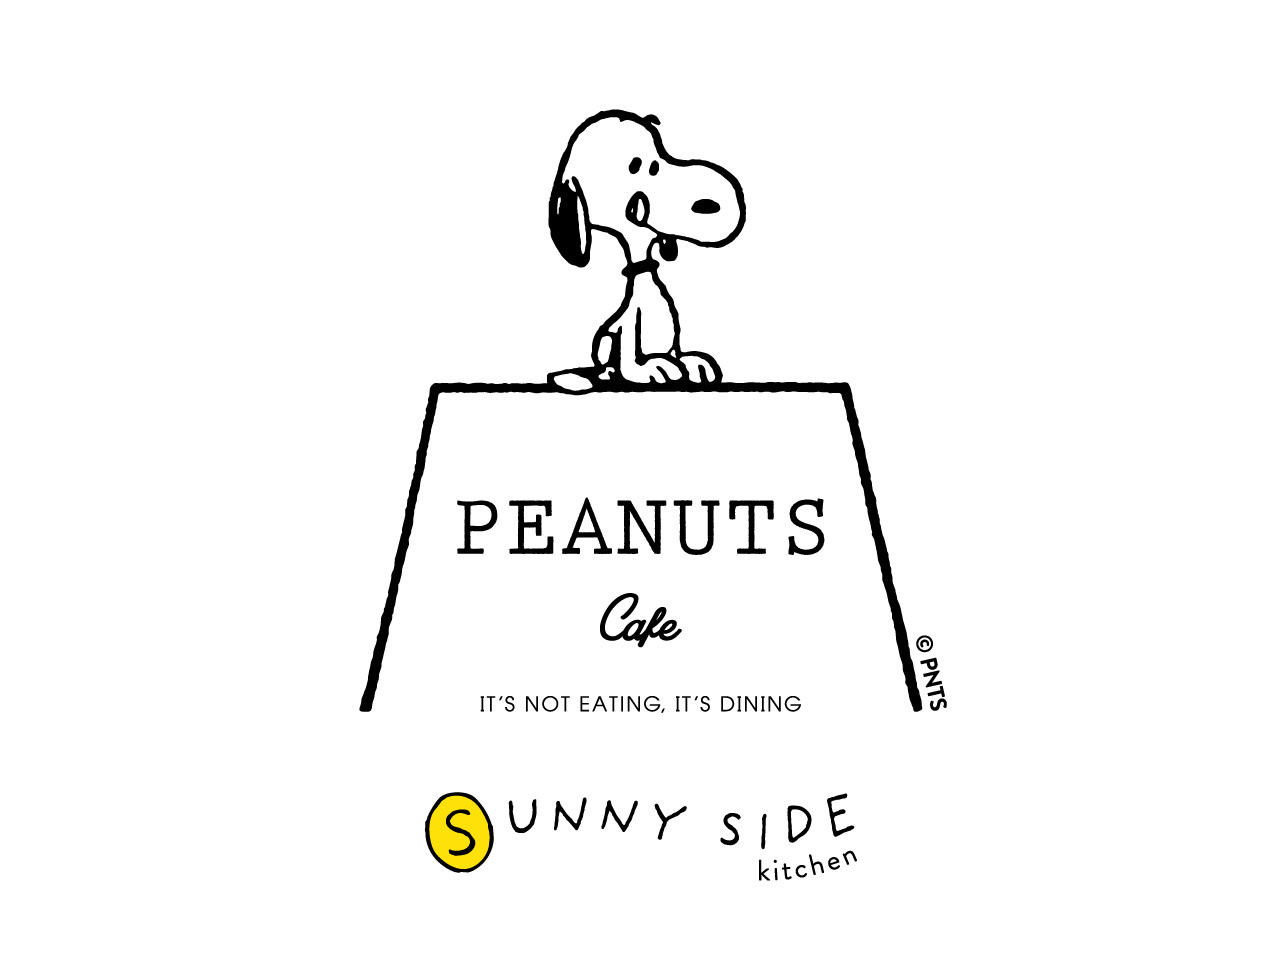 わたしの1日をしあわせにする、すこやかな食の時間を。
ピーナッツ カフェの新業態
「PEANUTS Cafe SUNNY SIDE kitchen」が原宿に
2021年7月末オープン！